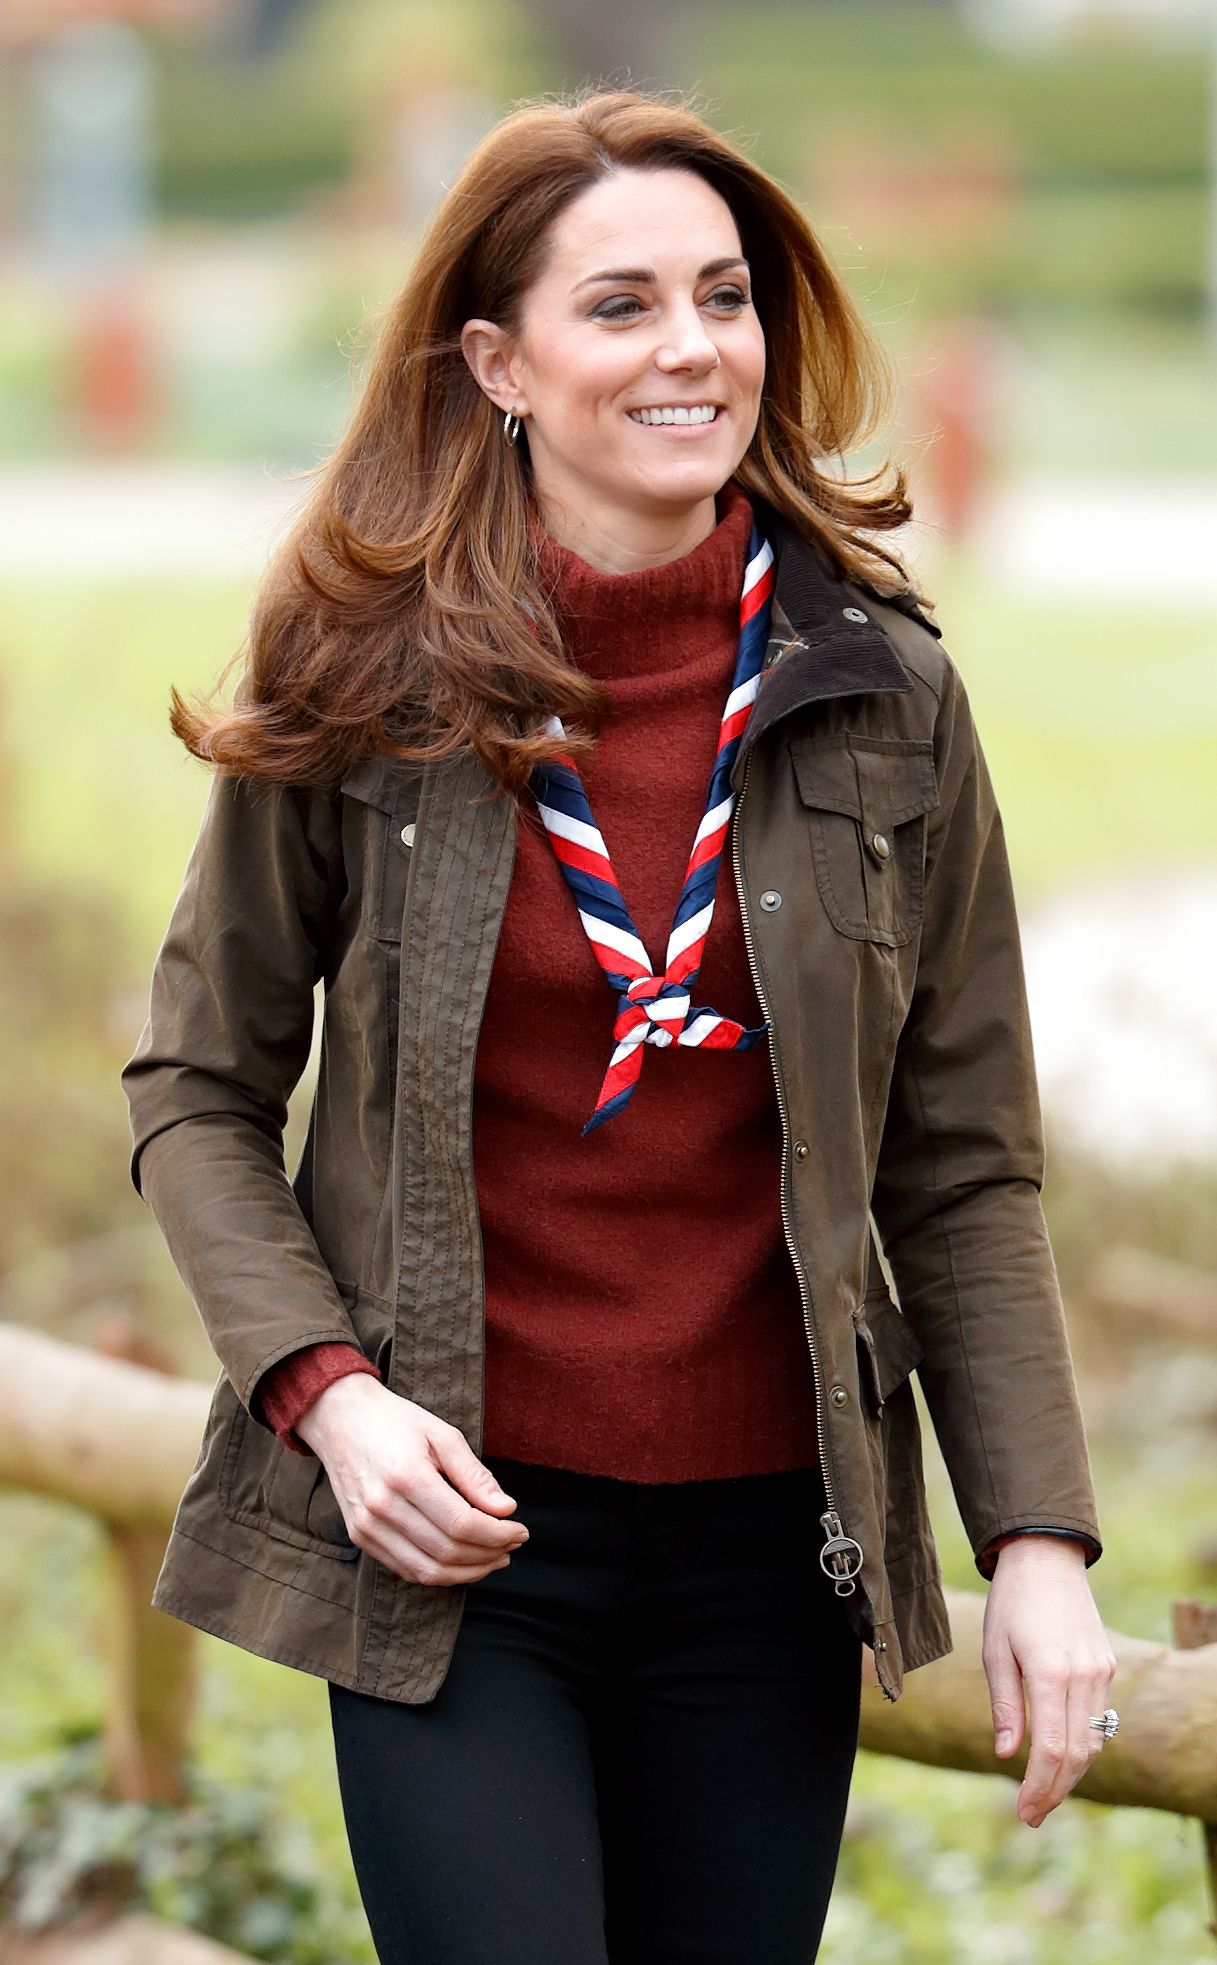 Photos of Kate Middleton, Princess Diana, & More Royals Wearing